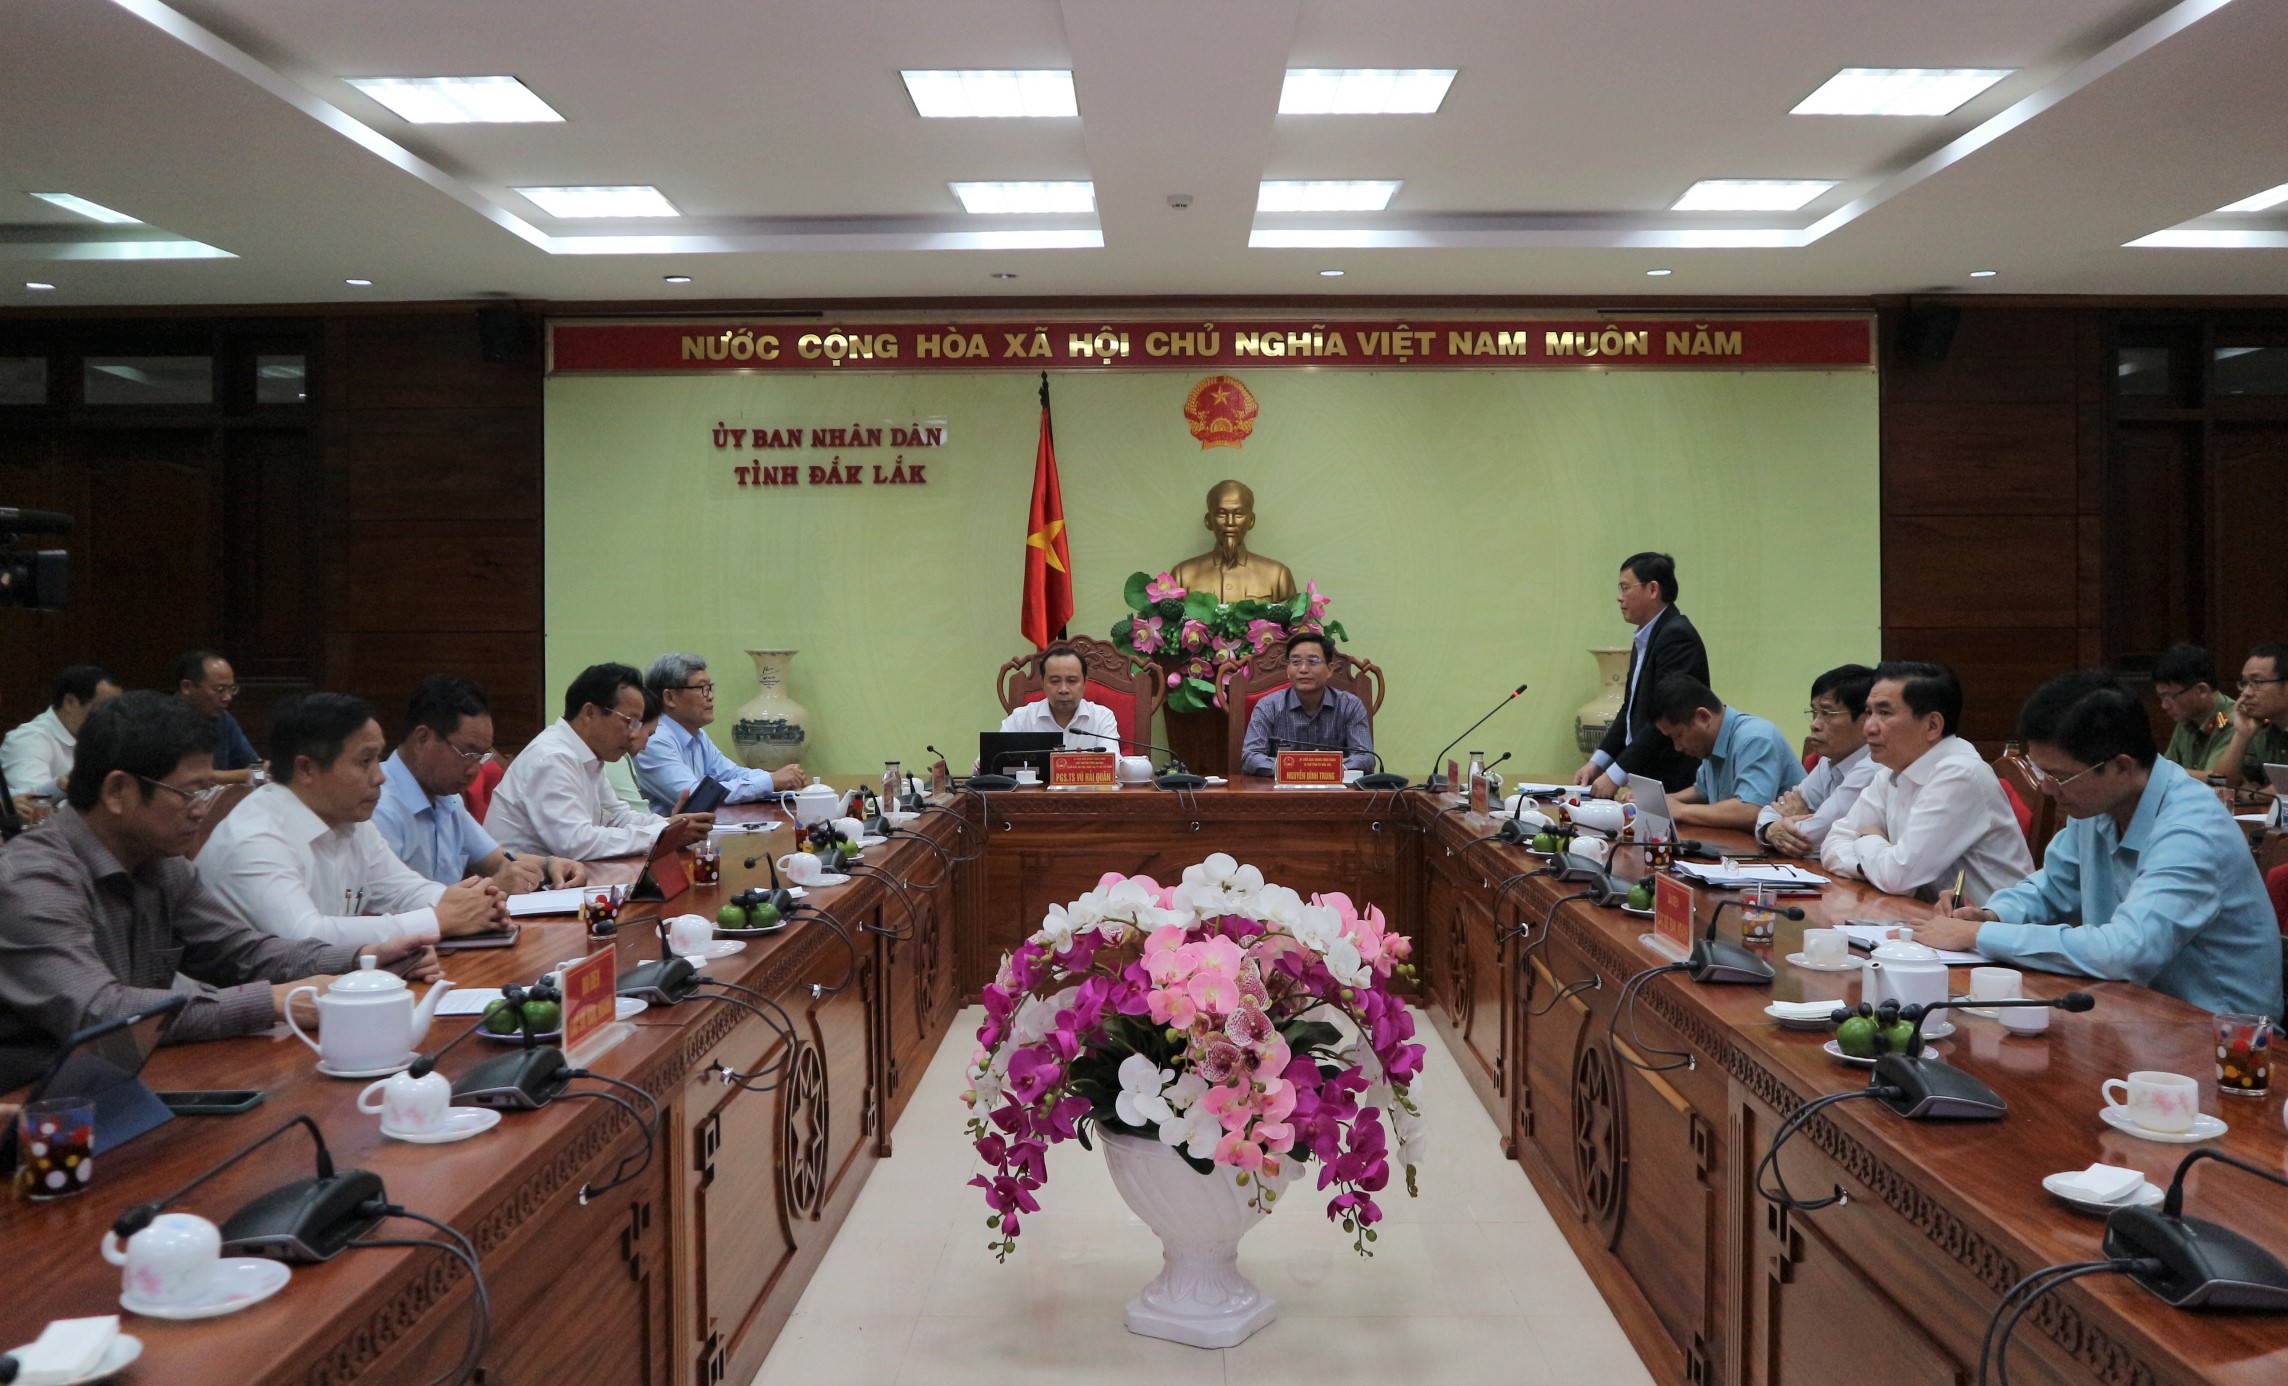 Đại học Quốc gia thành phố Hồ Chí Minh làm việc với UBND tỉnh về chuyển đổi số.